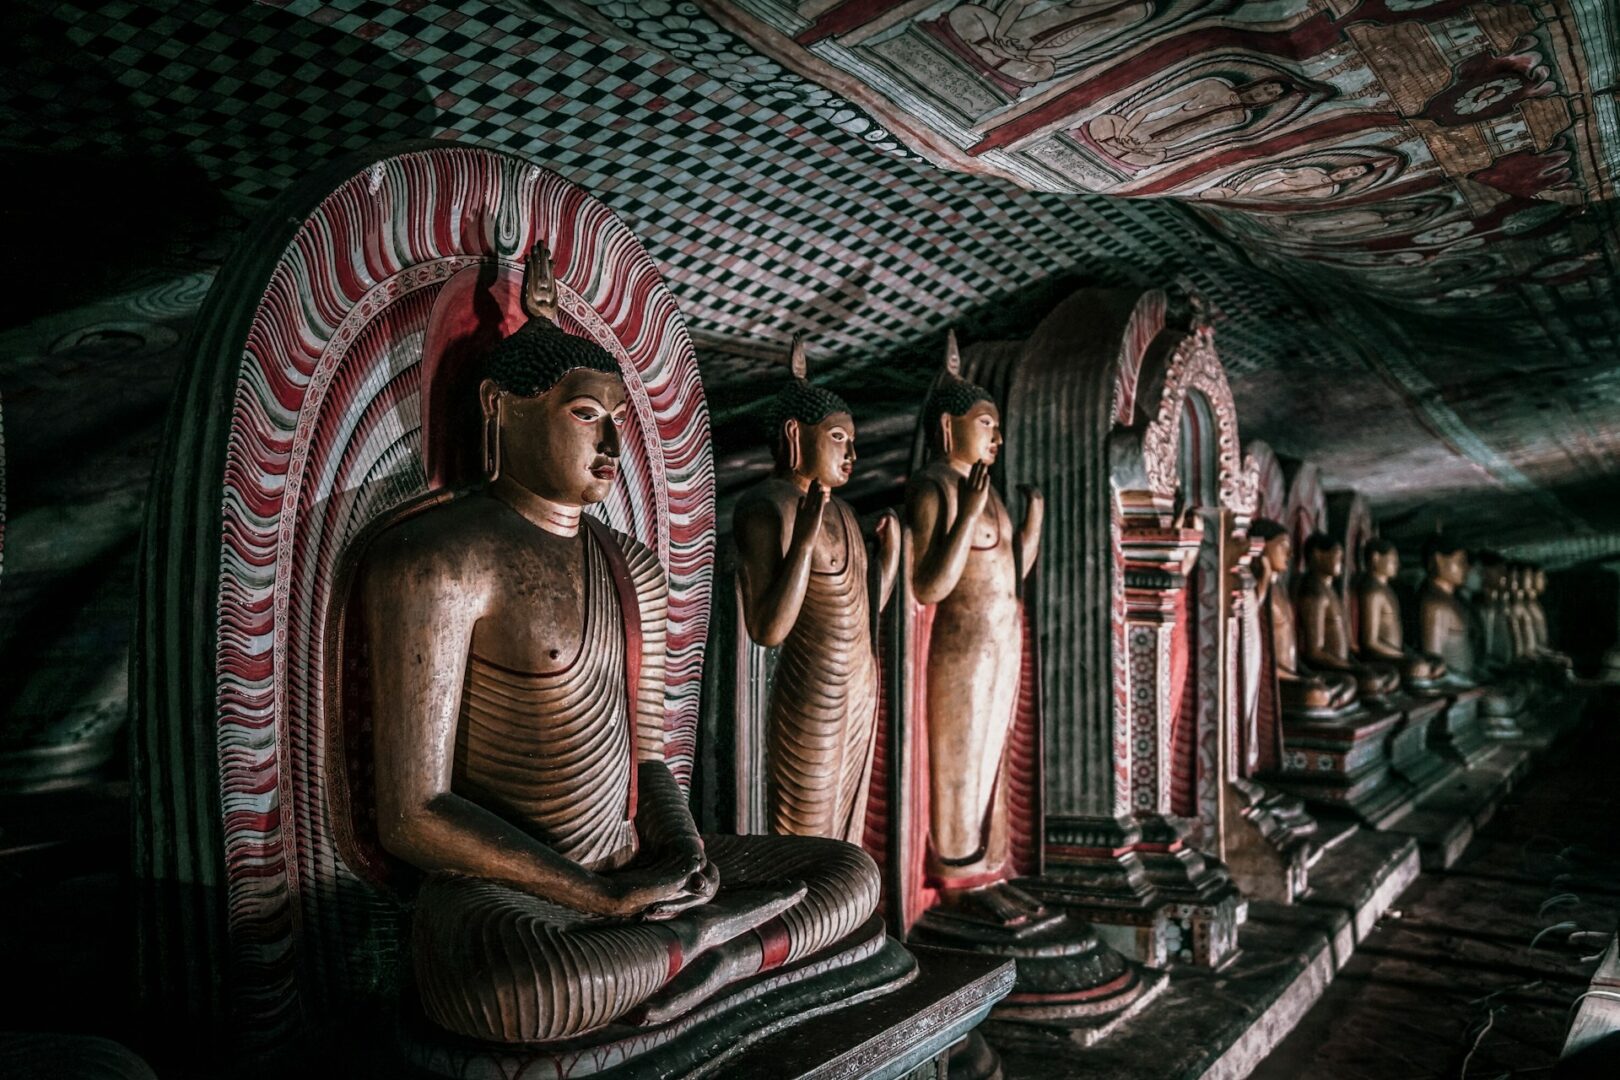 Dambulla Cave Temple, Sri Lanka - ויזה לסרי לנקה לחצי שנה ומעלה